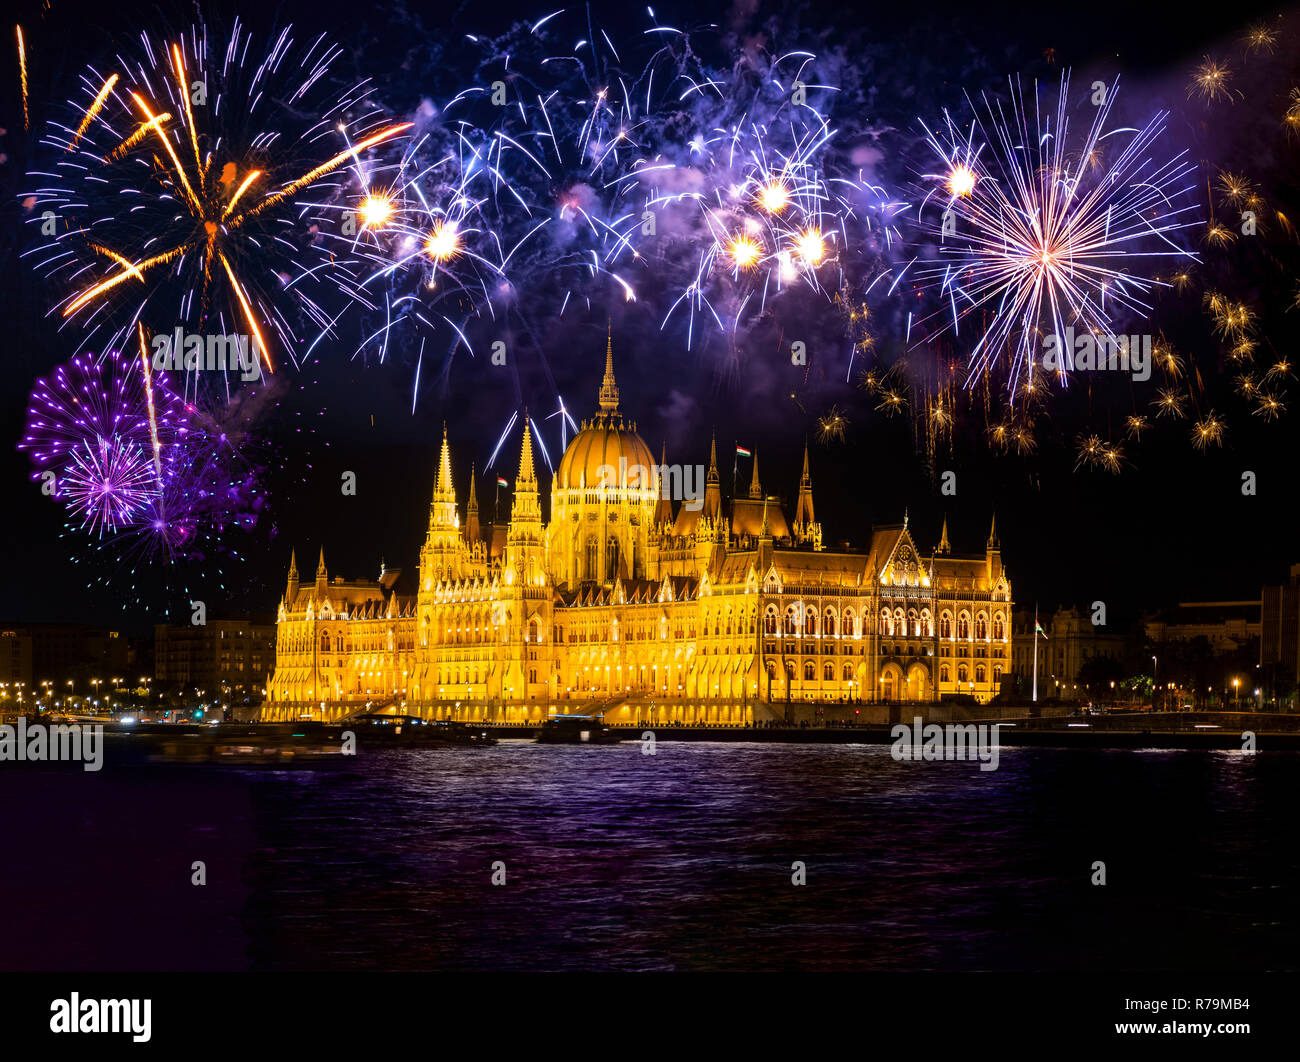 Silvester in der Stadt - Budapester Parlament mit Feuerwerk Stockfoto